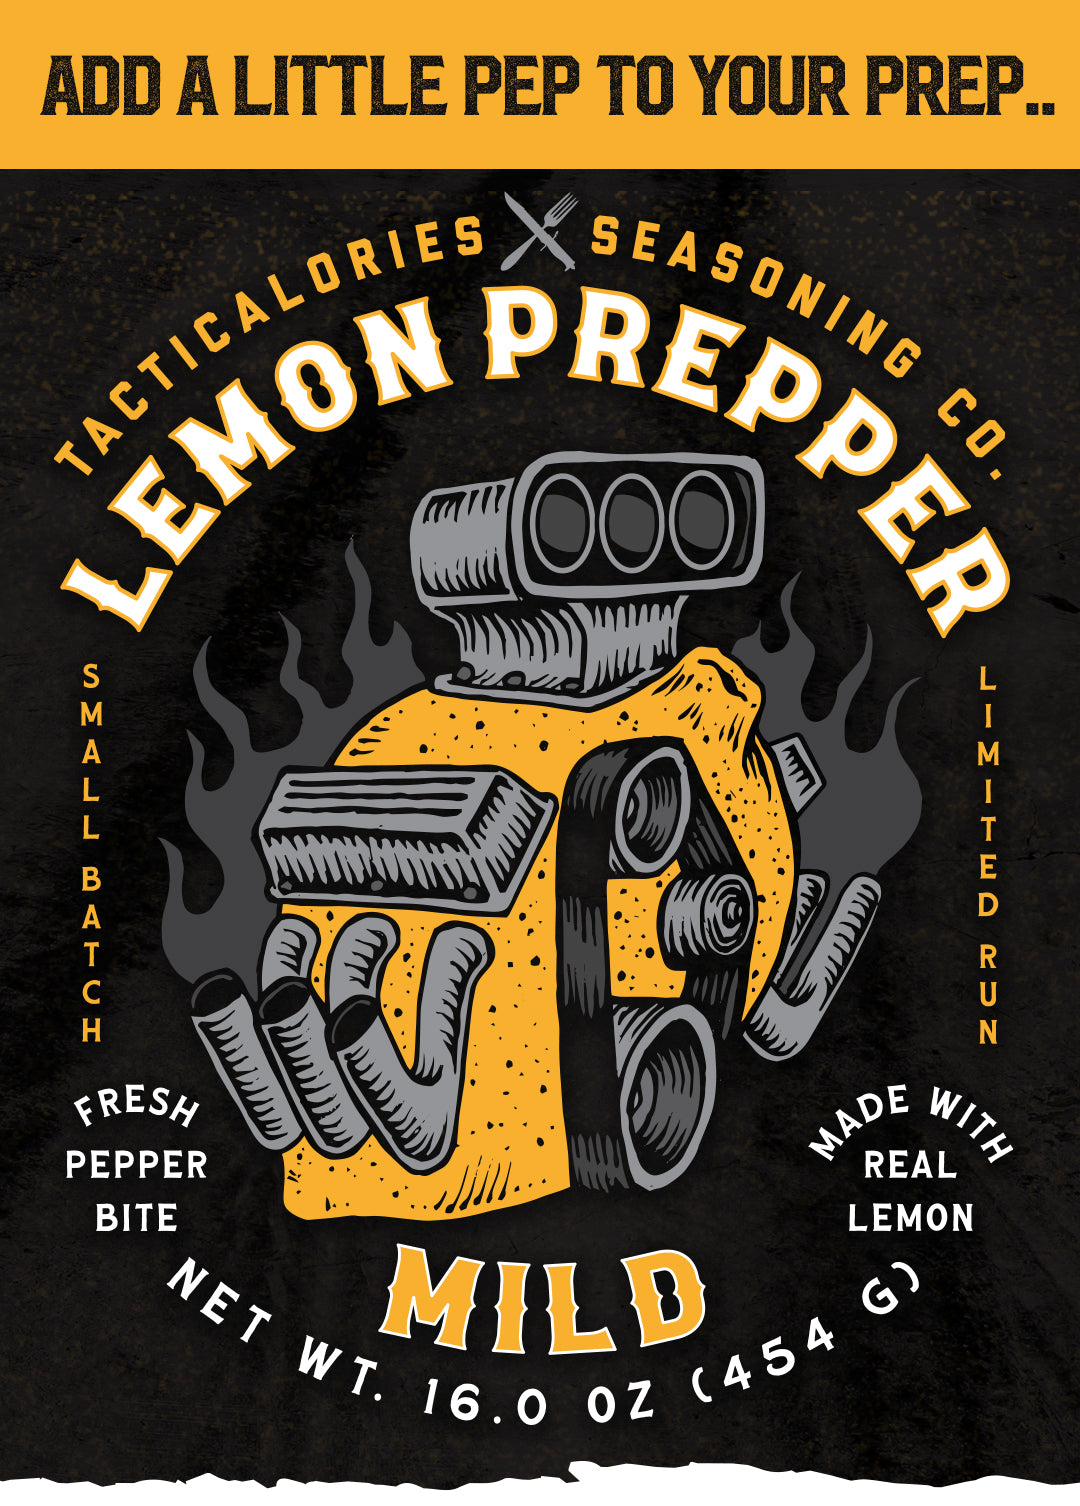 True Lemon Pepper Seasoning (2 pack) Natural Ingredients, No Salt